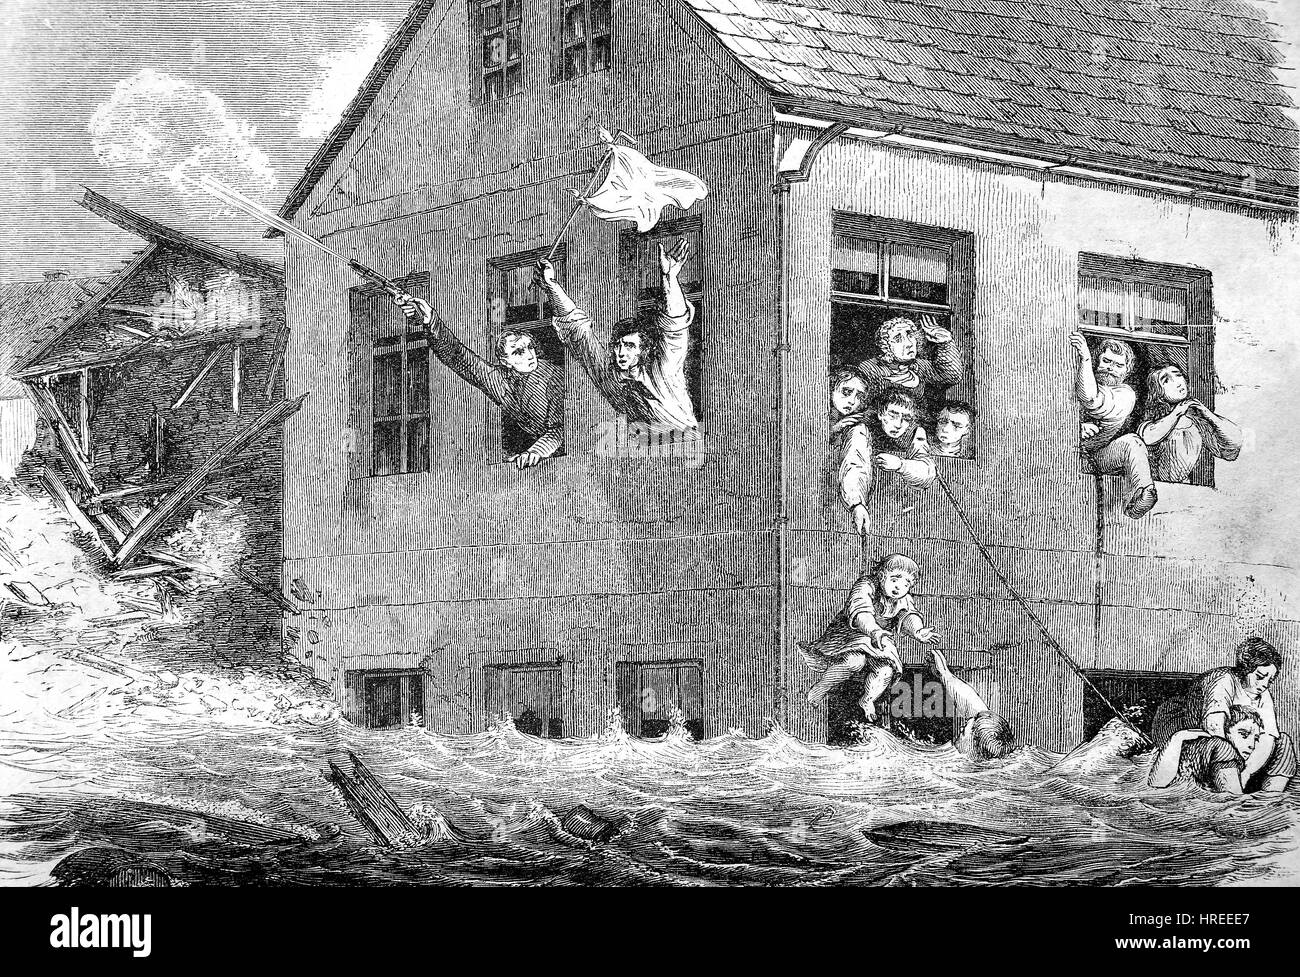 Inundacion de agua, escena de rescate de personas desde una casa, Sajonia, Alemania, en 1854, en un artículo -el Gartenlaube - Hoja de familia ilustrada, la reproducción de una xilografía del siglo xix, 1885 Foto de stock